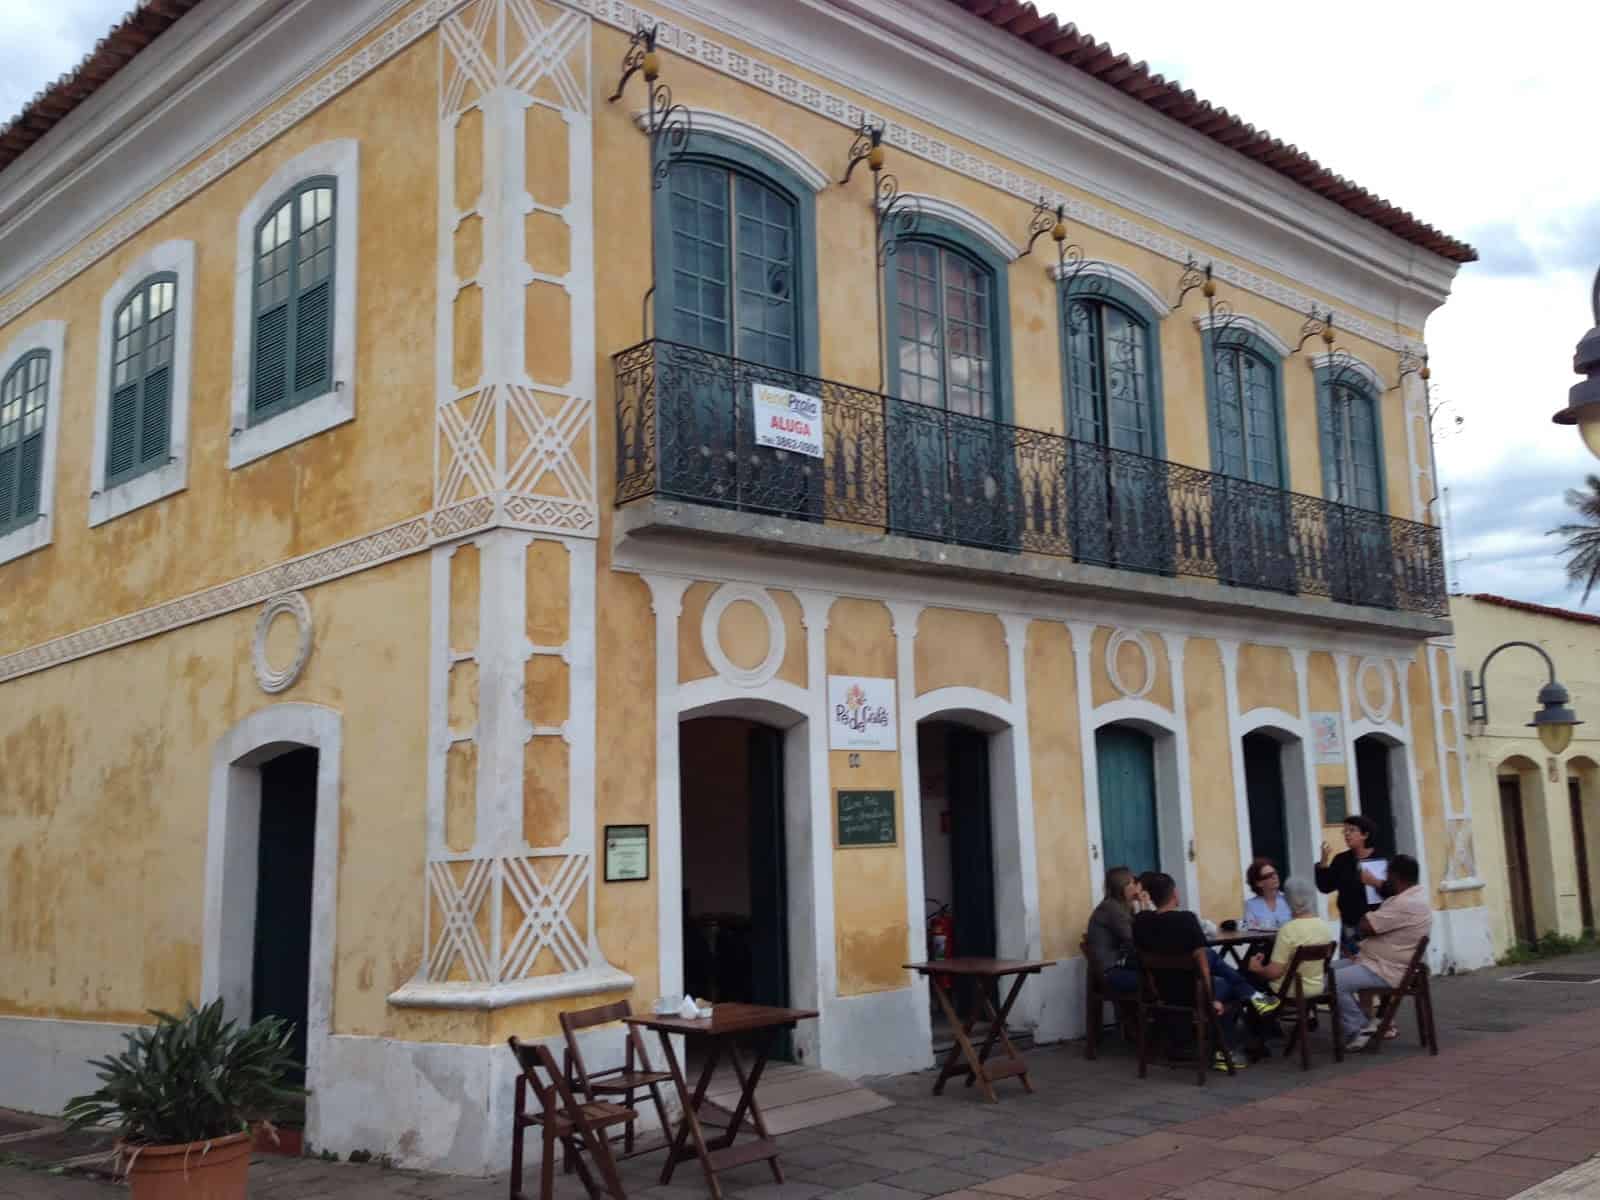 Colonial building in São Sebastião, Brazil